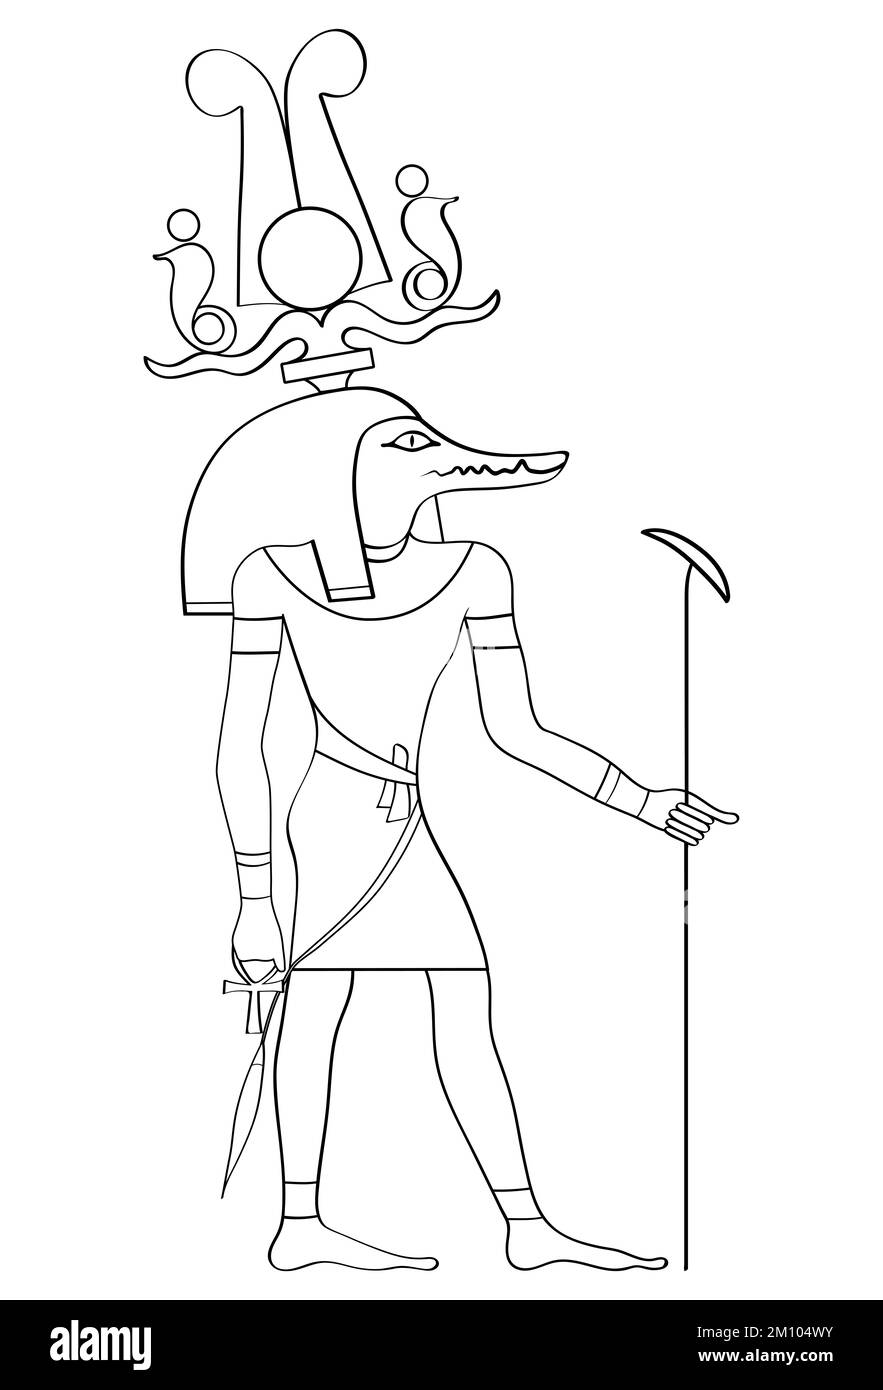 Sobek - coccodrillo Dio della forza e del potere nell'Antico Egitto, alcuni miti coinvolgono Sobek come il creatore del mondo Foto Stock